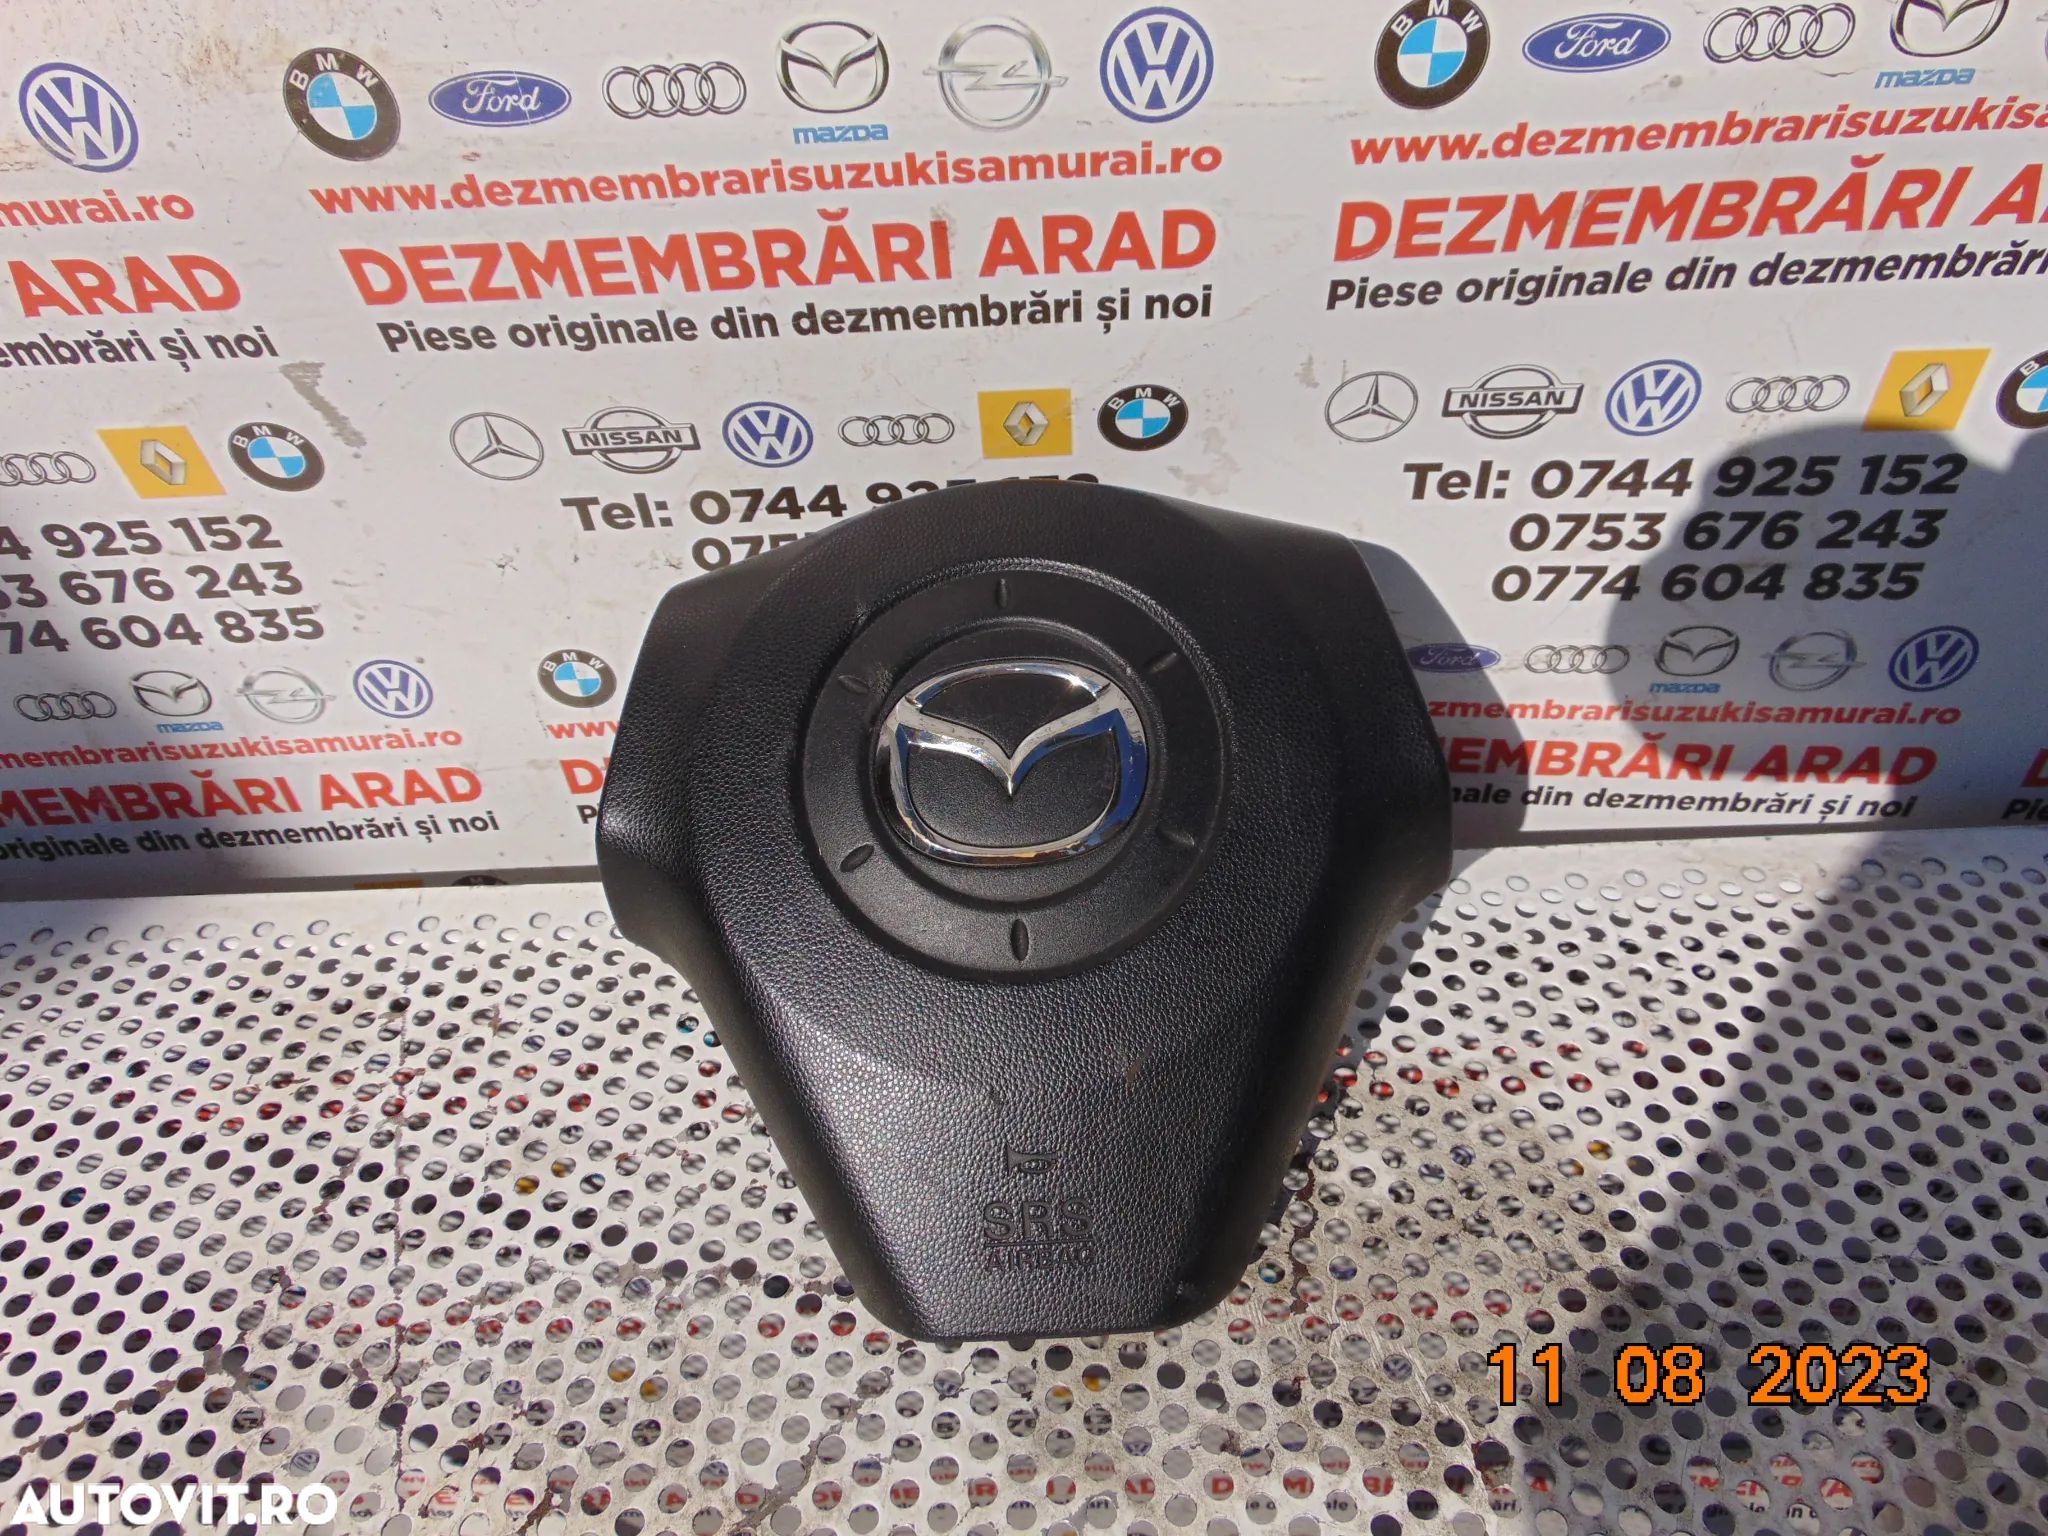 Airbag volan Mazda 3 bk an 2003-2009 airbag sofer stanga - 1